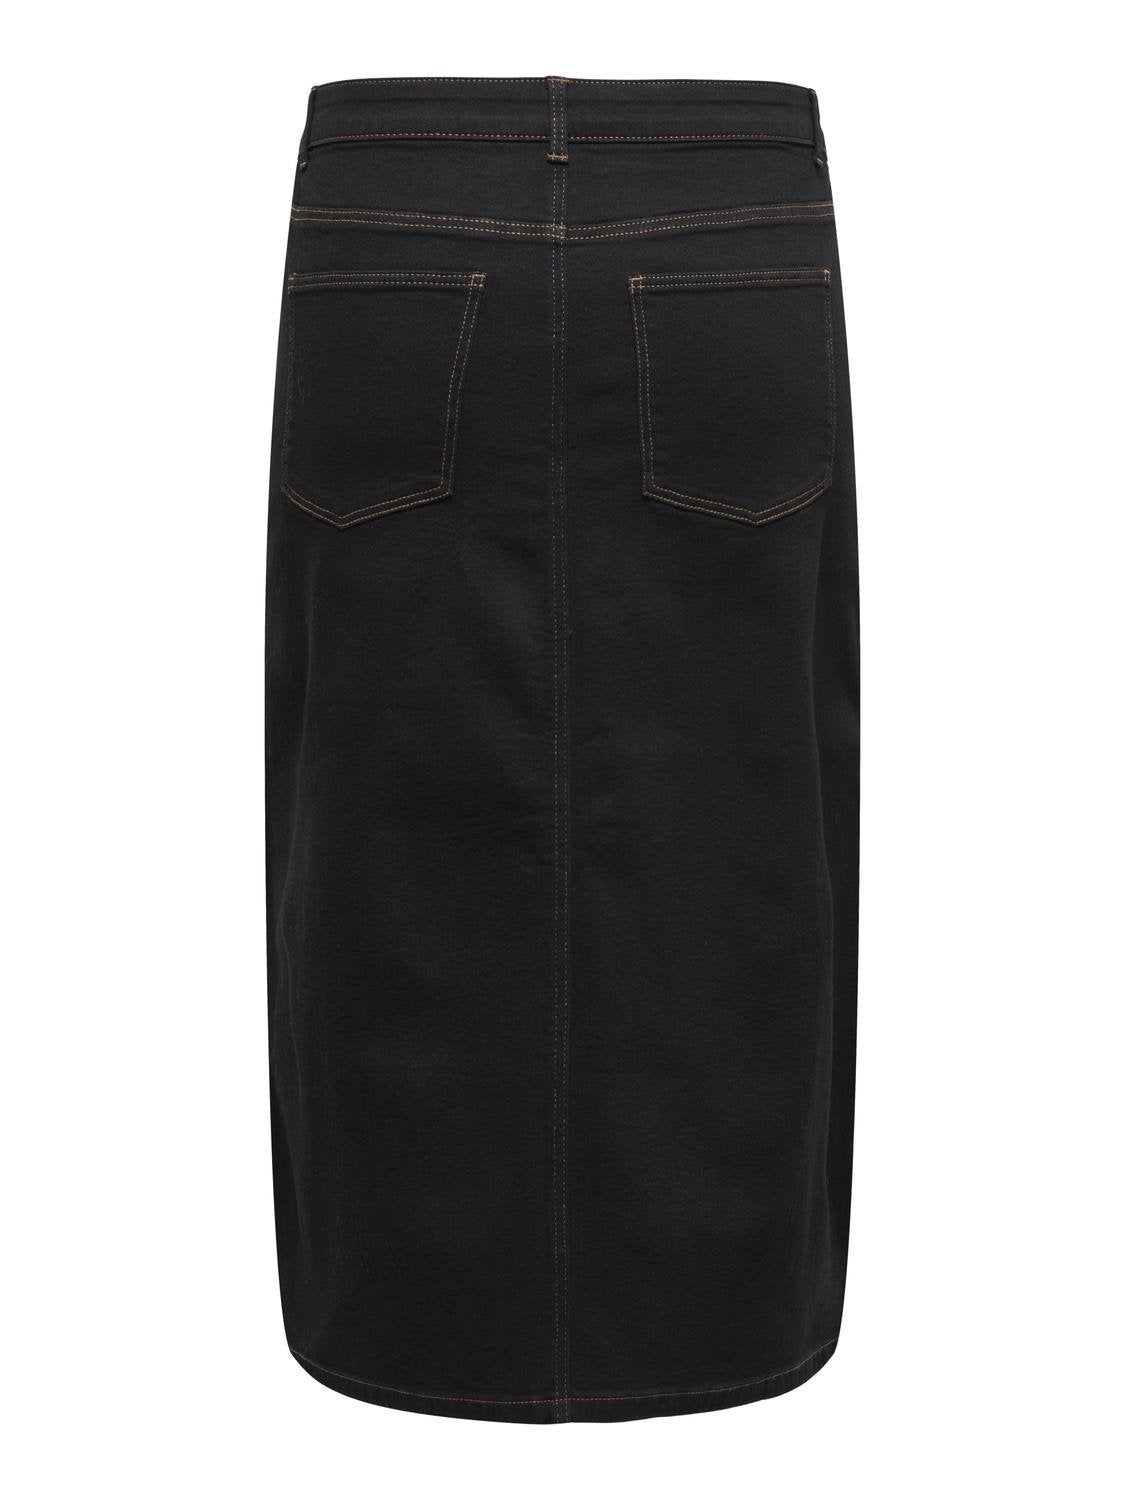 Adrift Denim Long Split Skirt in Black - Button closure, Zip Fly, Belt  Loops – Adrift Clothing